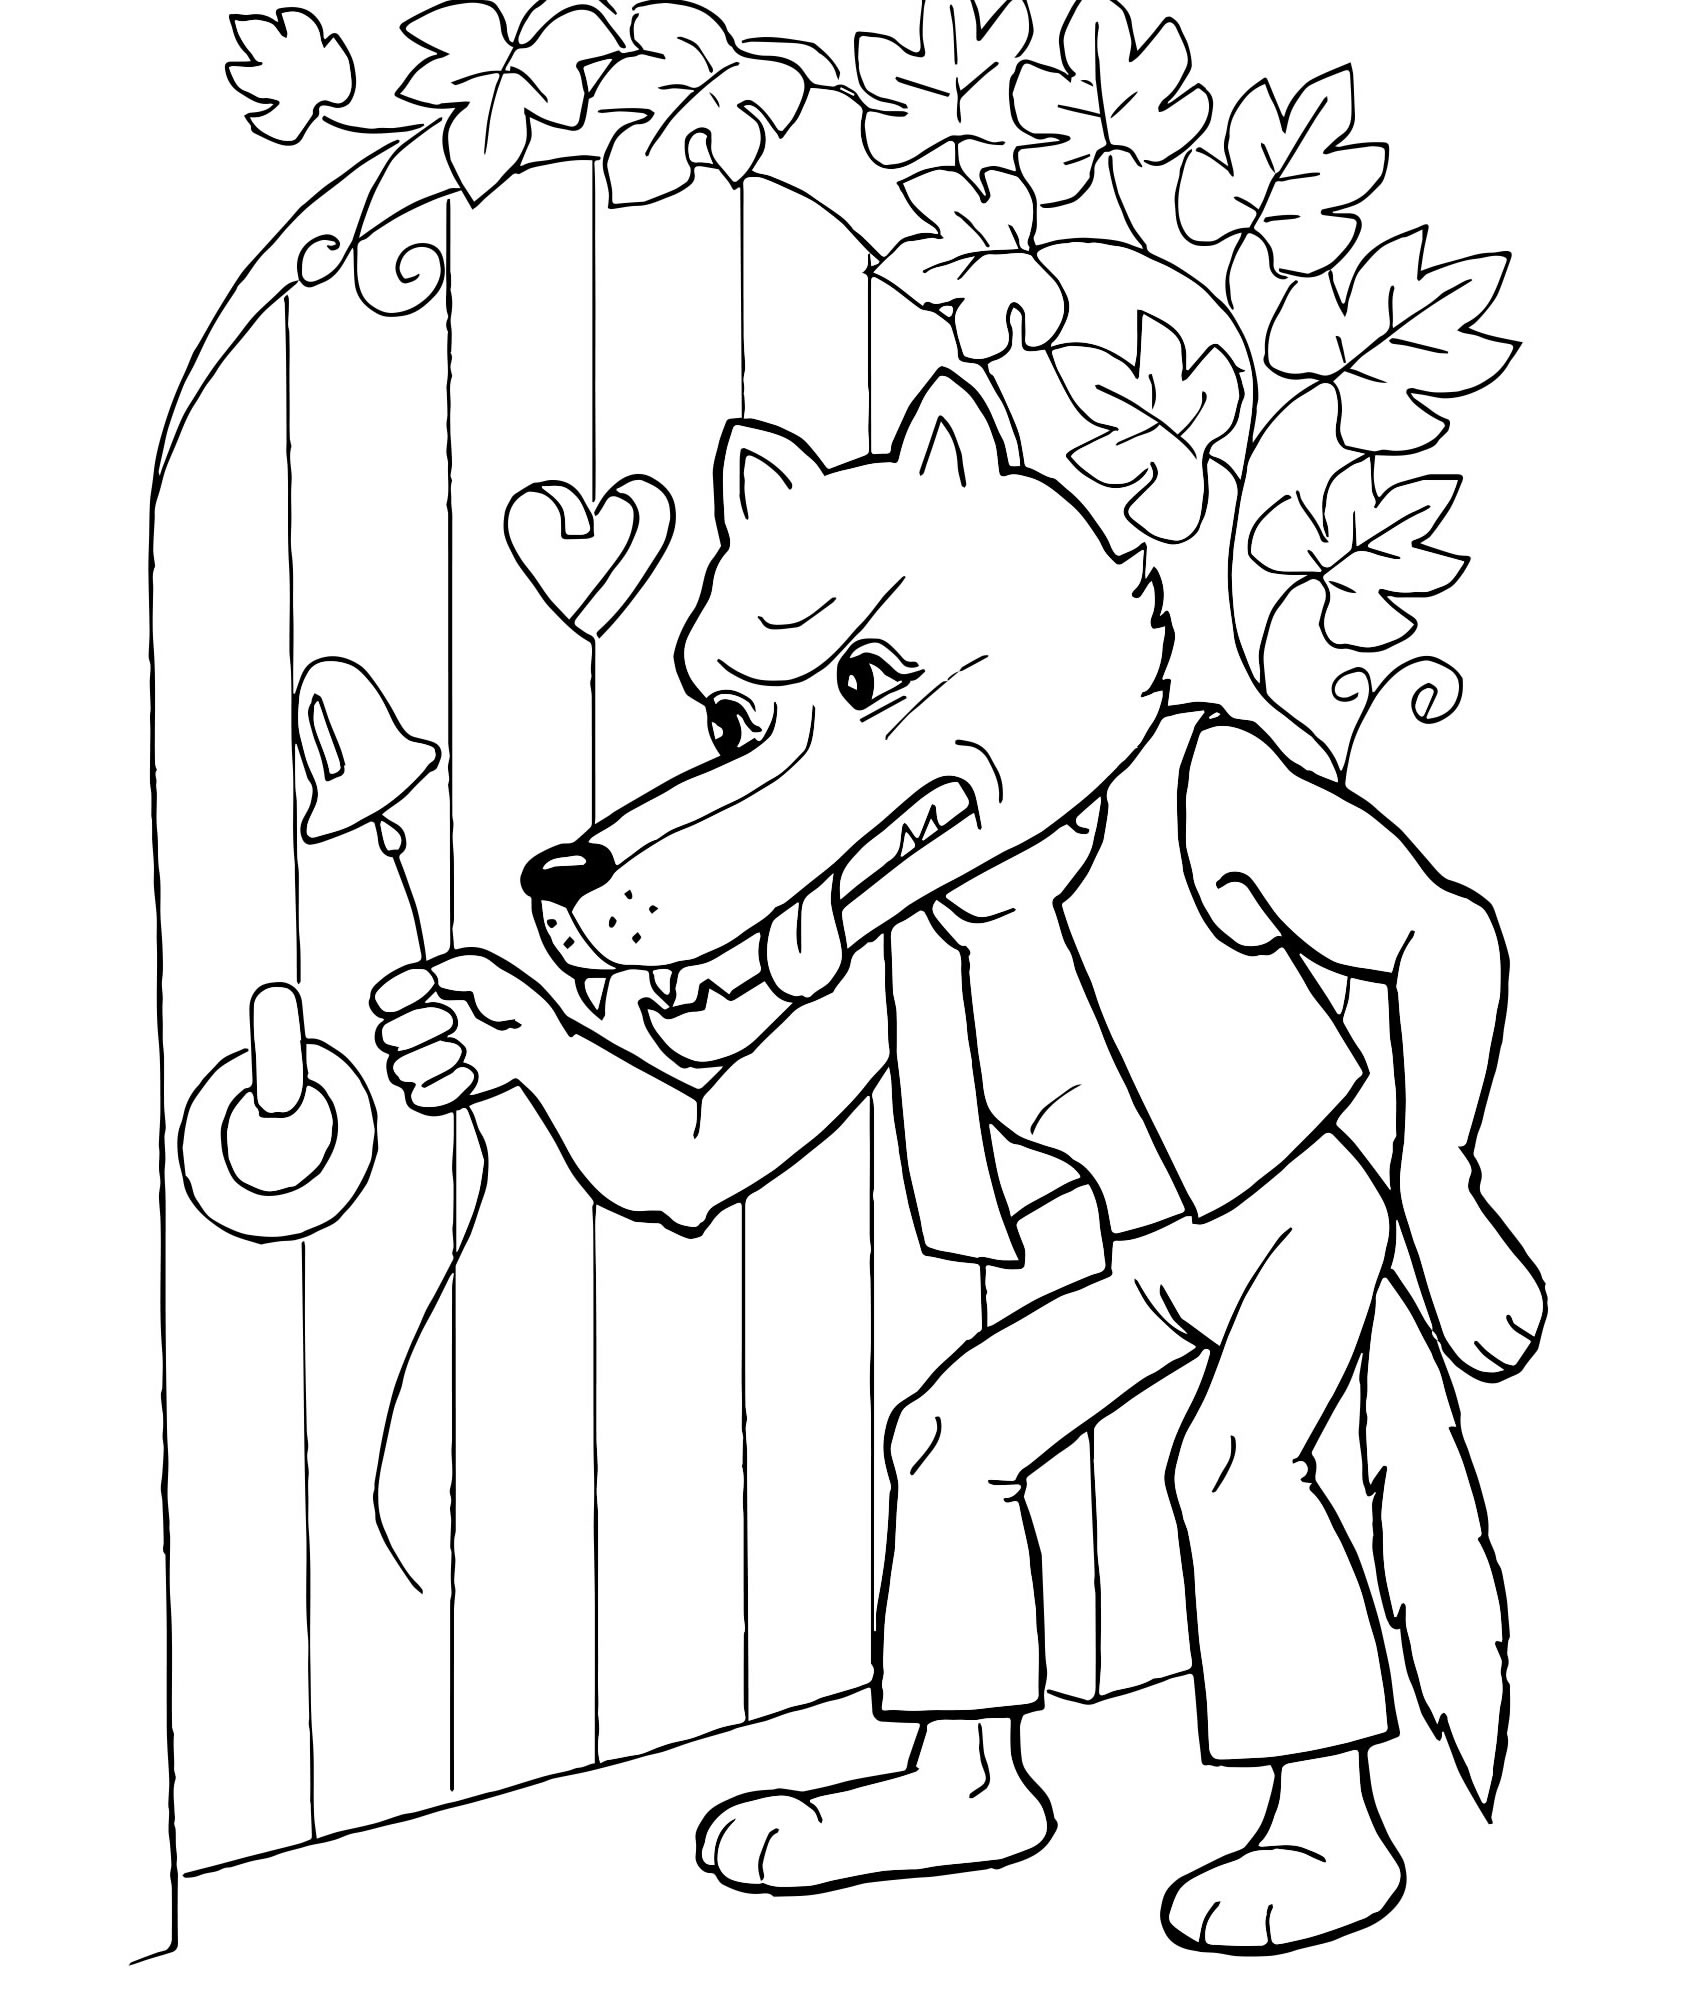 Волк из сказки — раскраска для детей. Распечатать бесплатно.